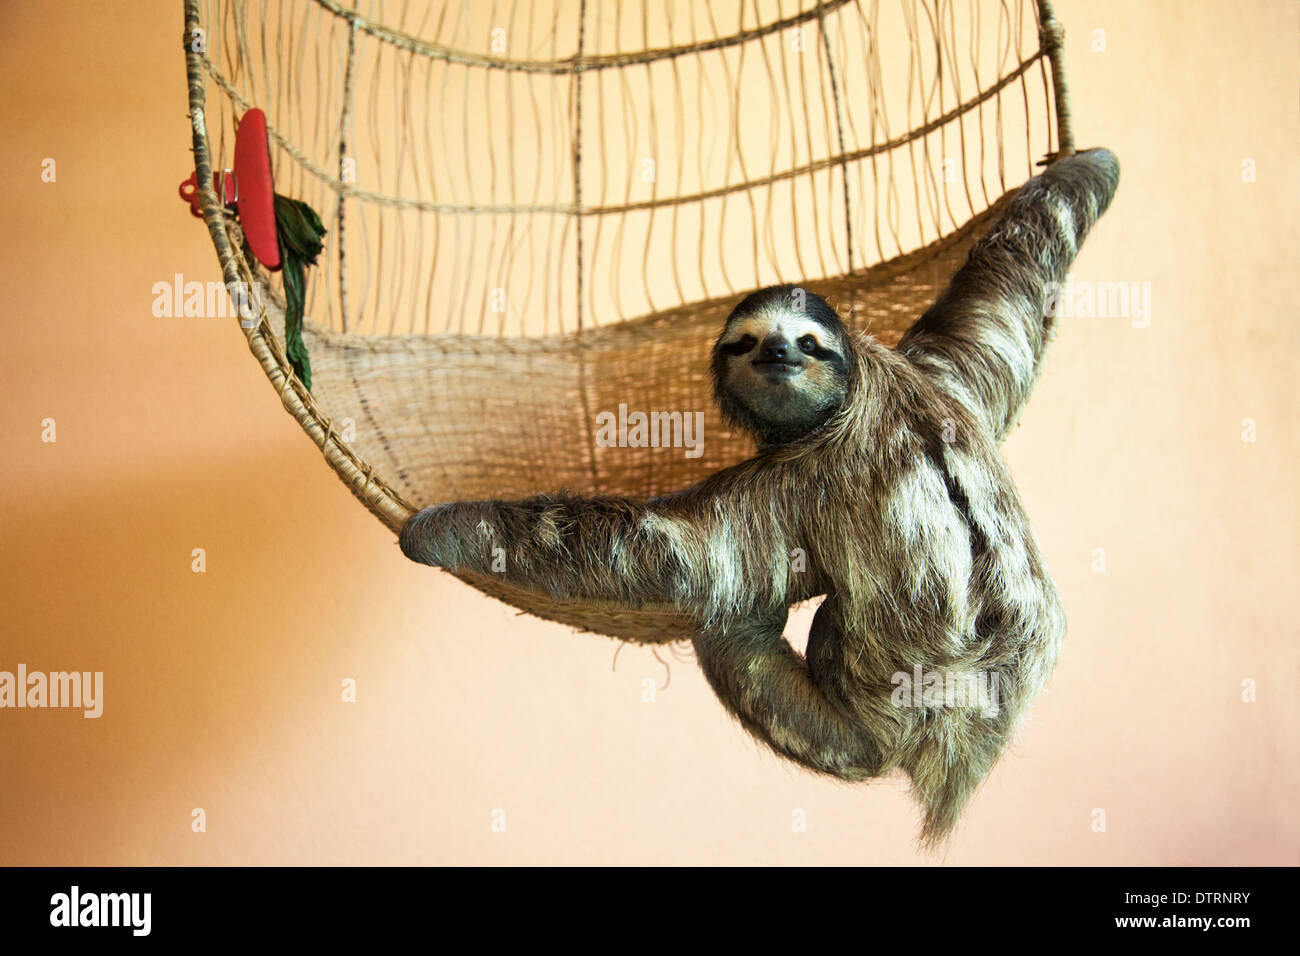 Sloth salvato a tre punte (Bradypus variegatus) appeso a un cestino al Santuario di Sloth in Costa Rica Foto Stock